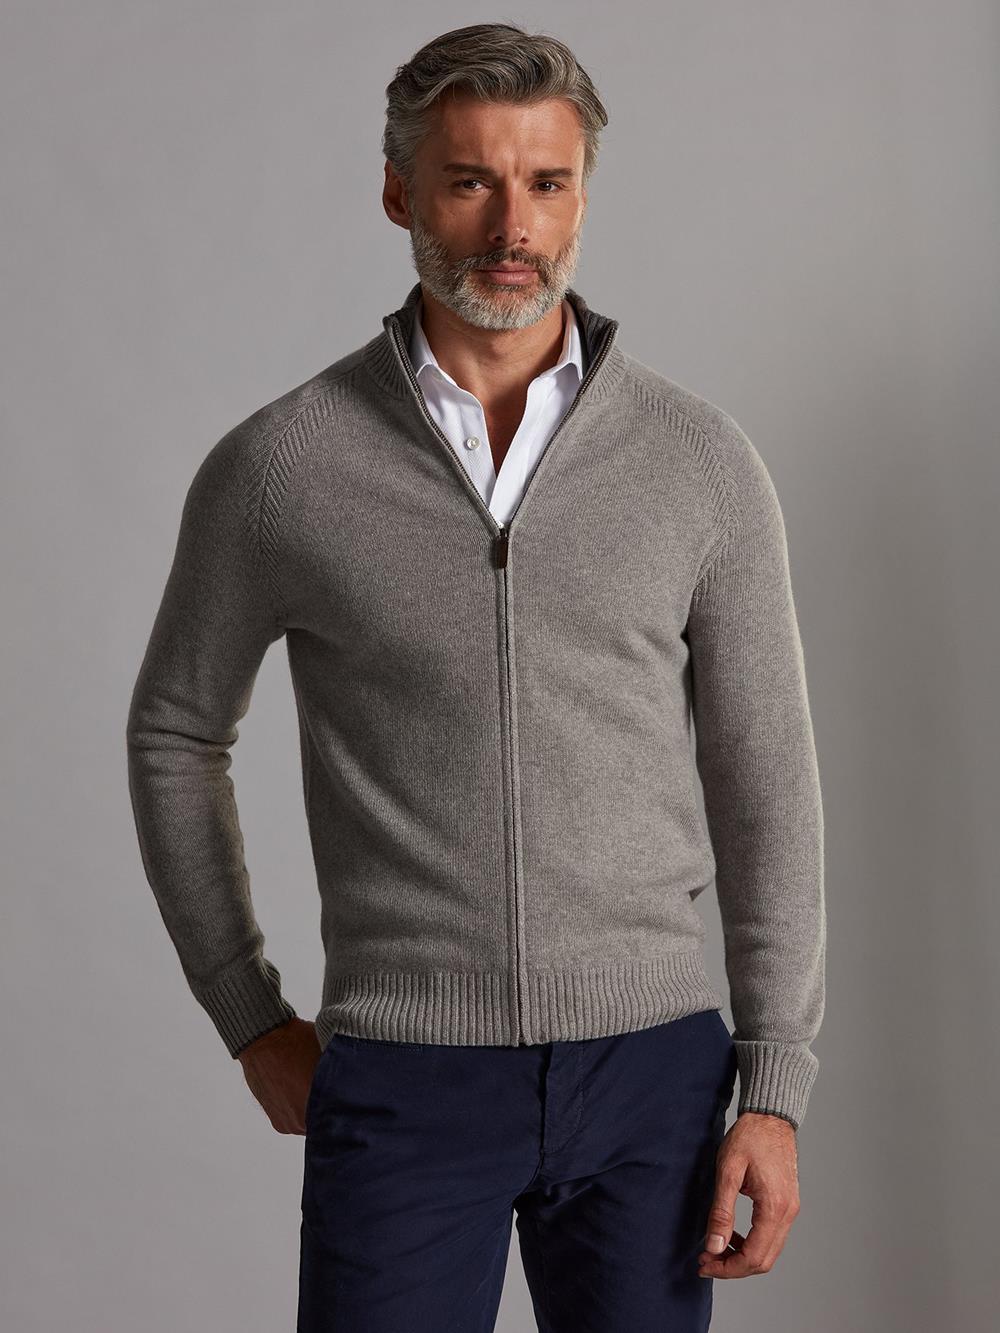 Ben zip-up cardigan in grey lambswool